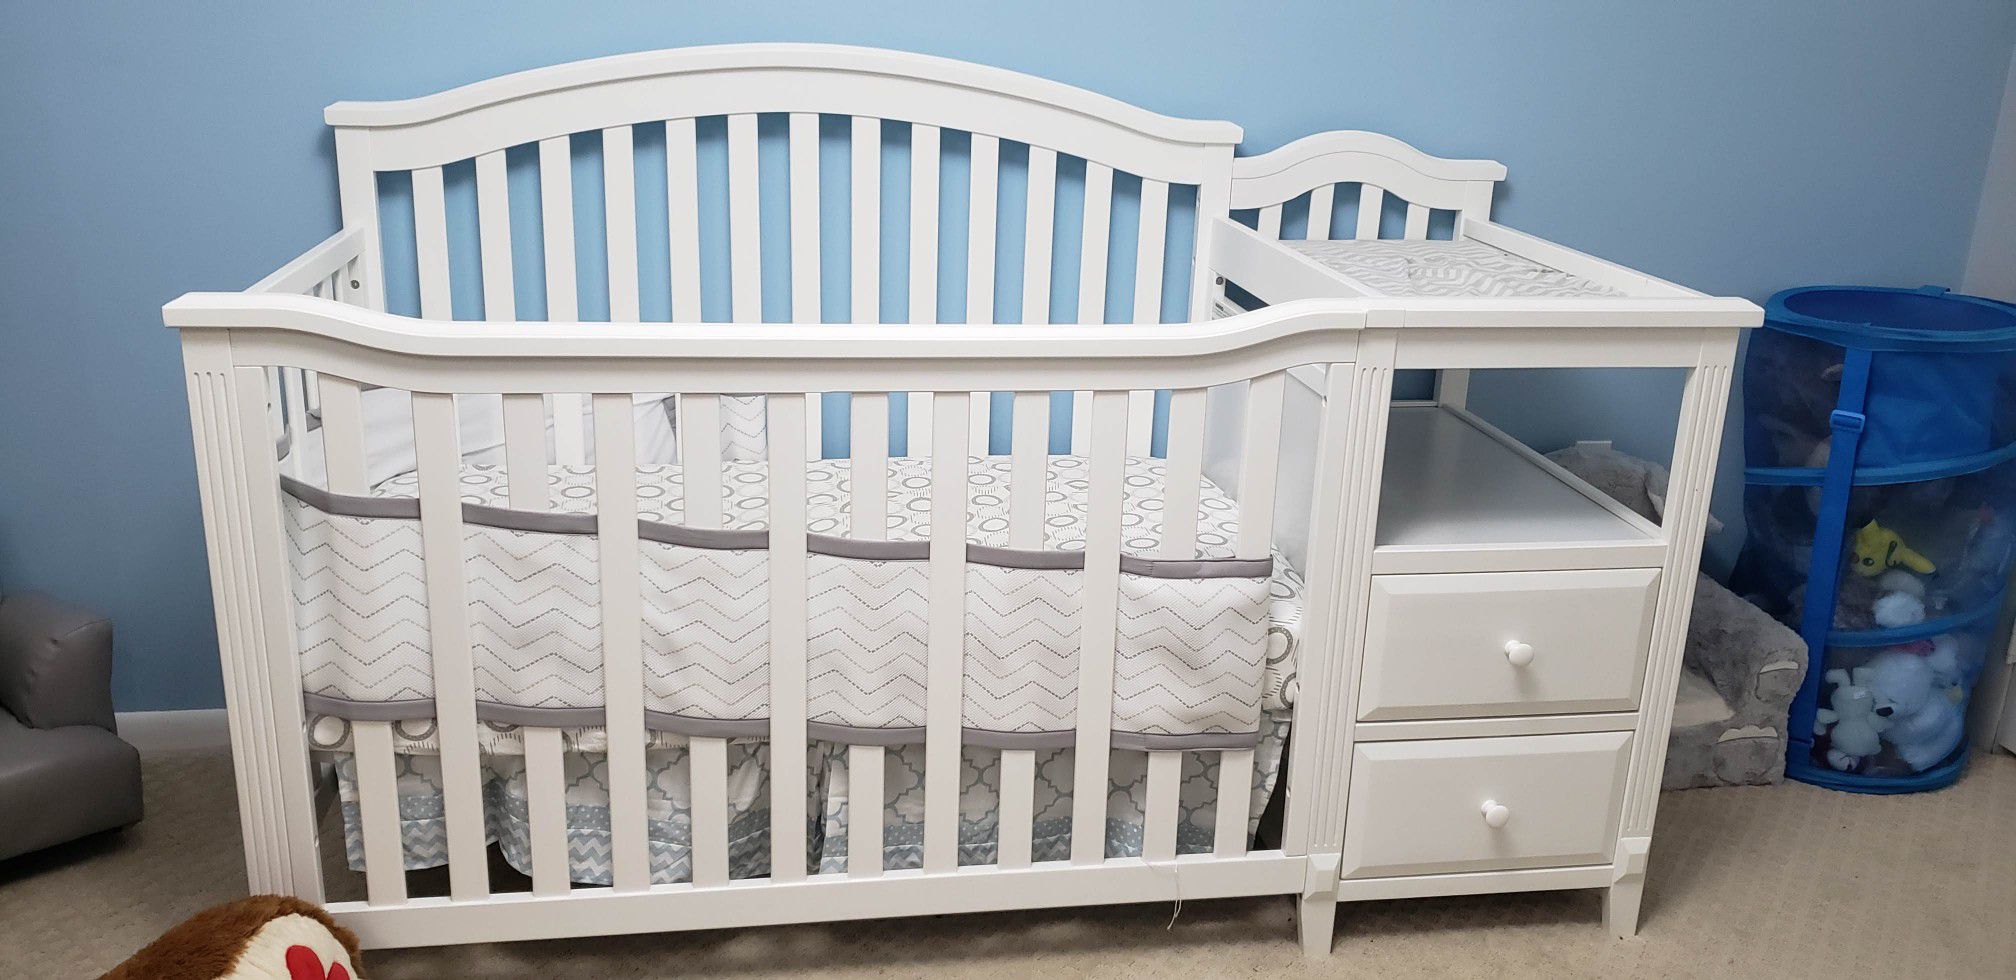 Sorelle Berkley crib with a mattress